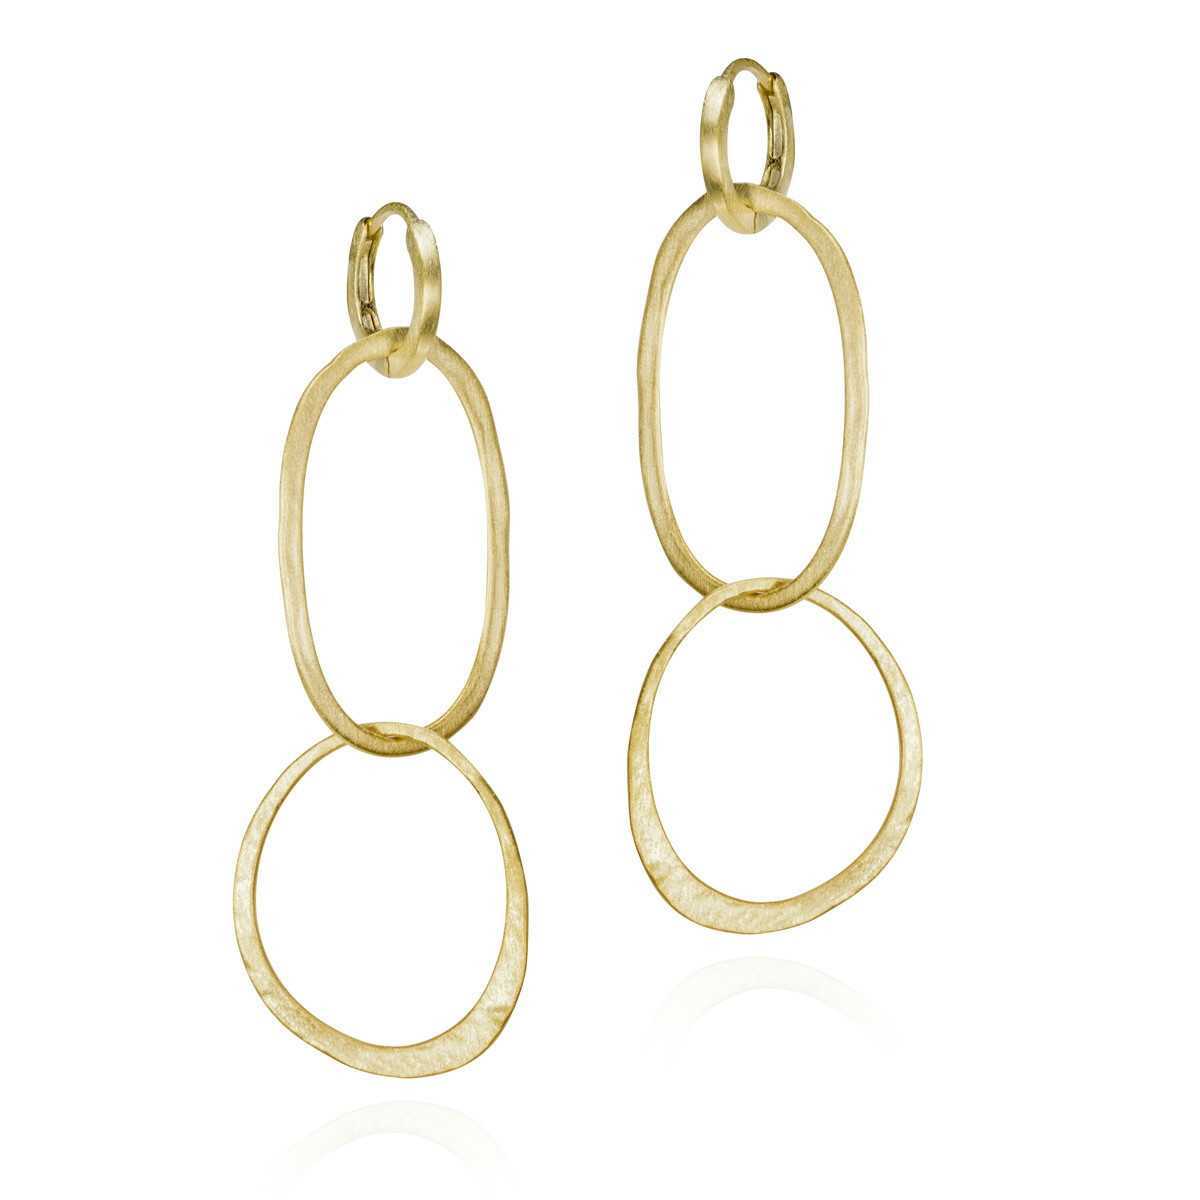 OLYMPIA Earrings in Silver. 18k Gold Vermeil